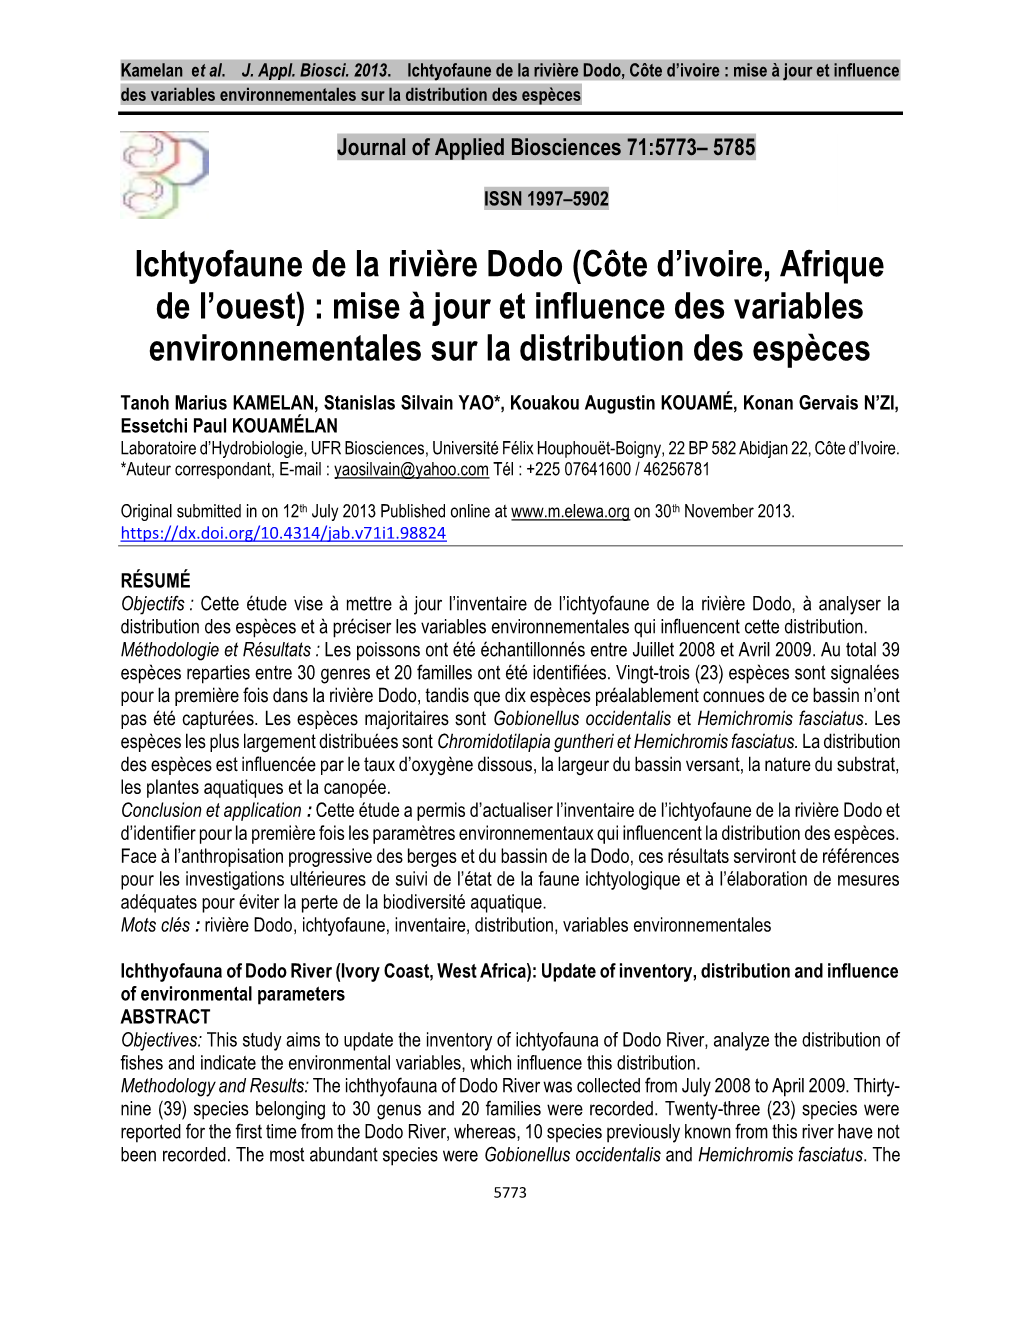 Ichtyofaune De La Rivière Dodo, Côte D’Ivoire : Mise À Jour Et Influence Des Variables Environnementales Sur La Distribution Des Espèces